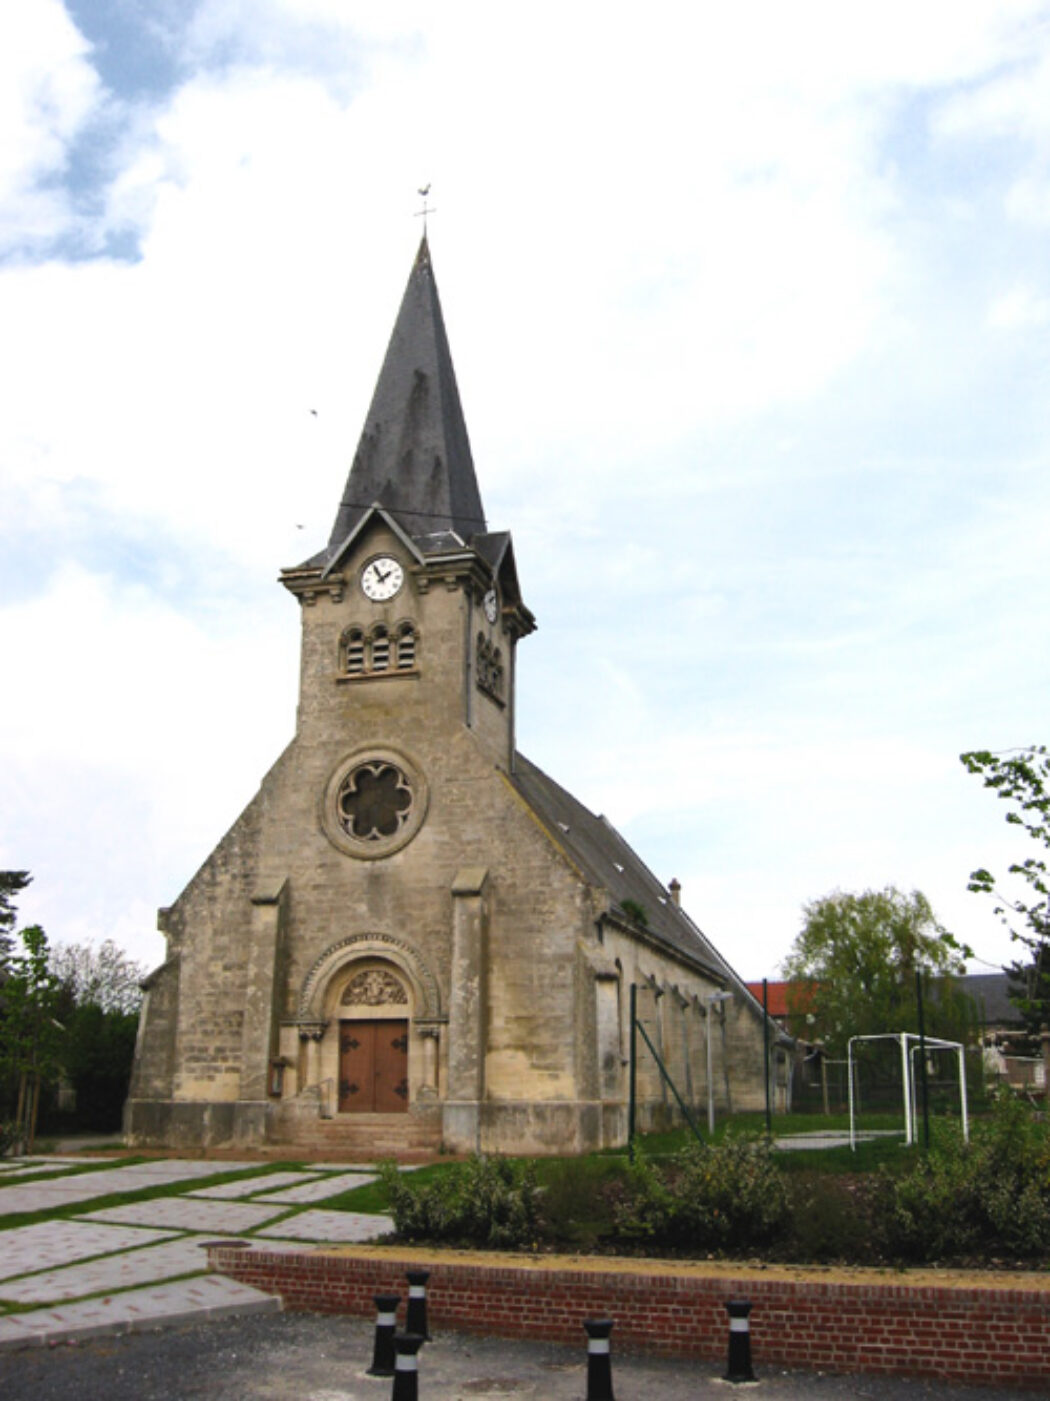 Quatre églises taguées dans la Somme, un prêtre visé